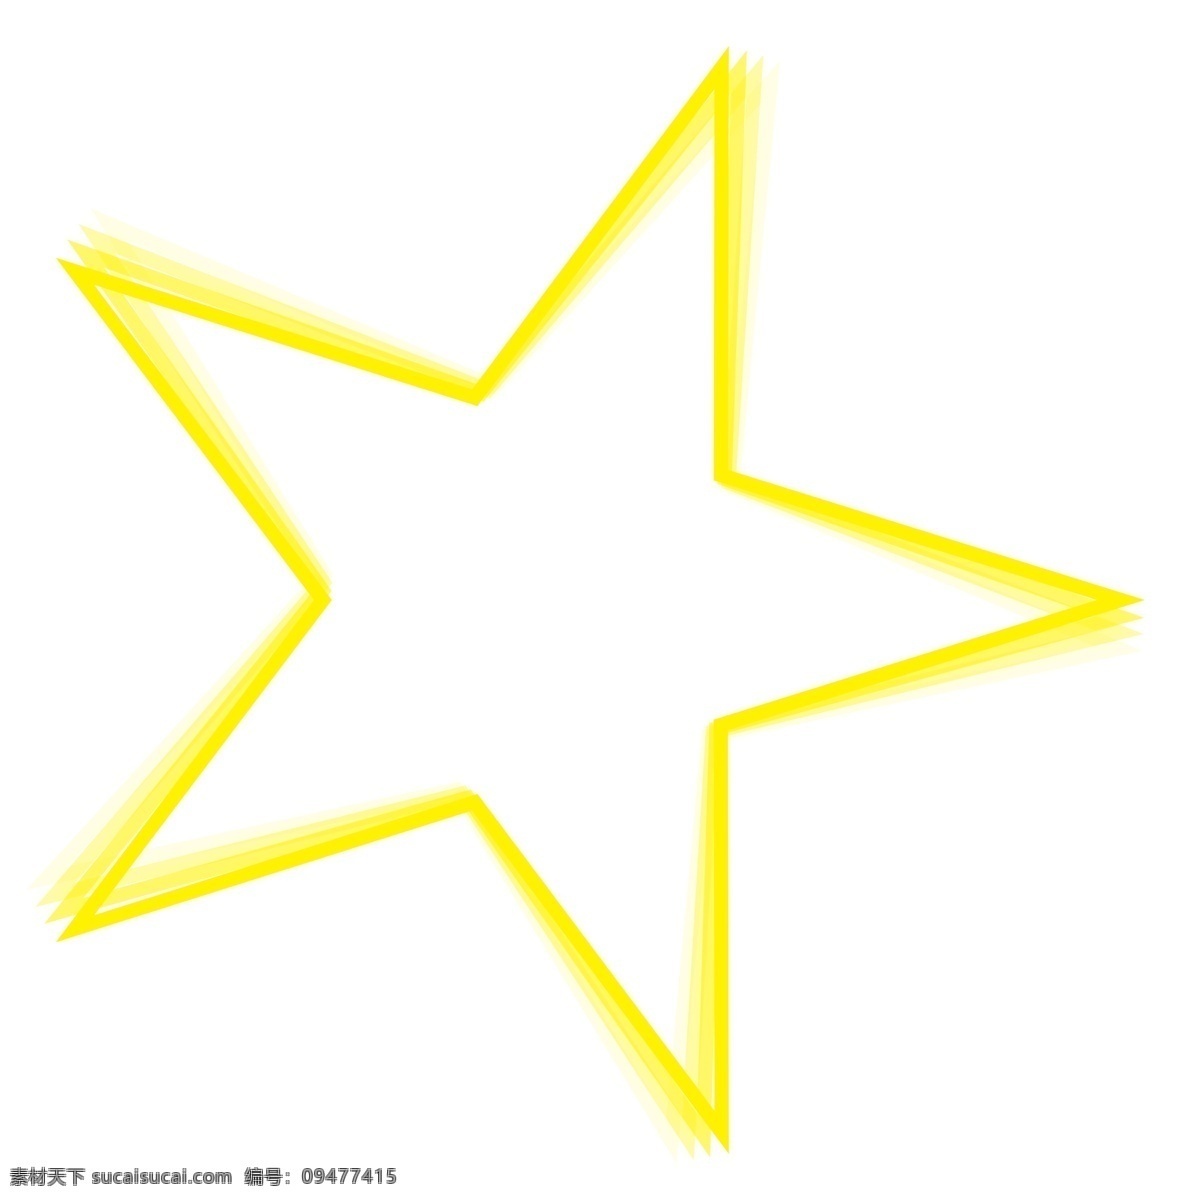 黄色 卡通 可爱 星星 边框 渐变 小清晰 创意 姓名框 五角星 儿童节 童心 俏皮 相框 时尚 手绘 对称 原宿